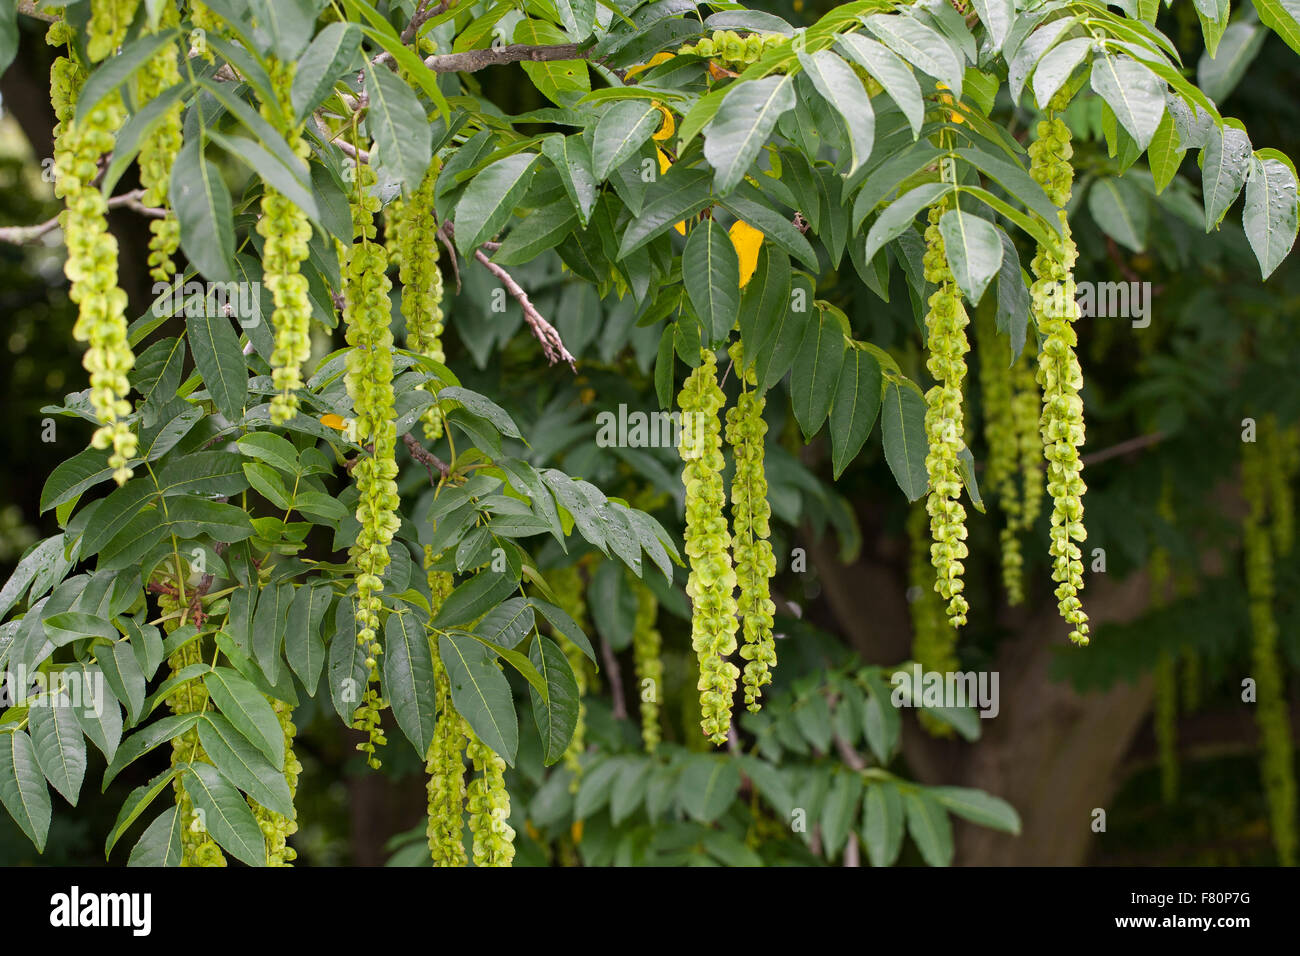 Caucasian wingnut, Caucasian walnut, Kaukasische Flügelnuss, Kaukasische Flügelnuß, Pterocarya fraxinifolia Stock Photo